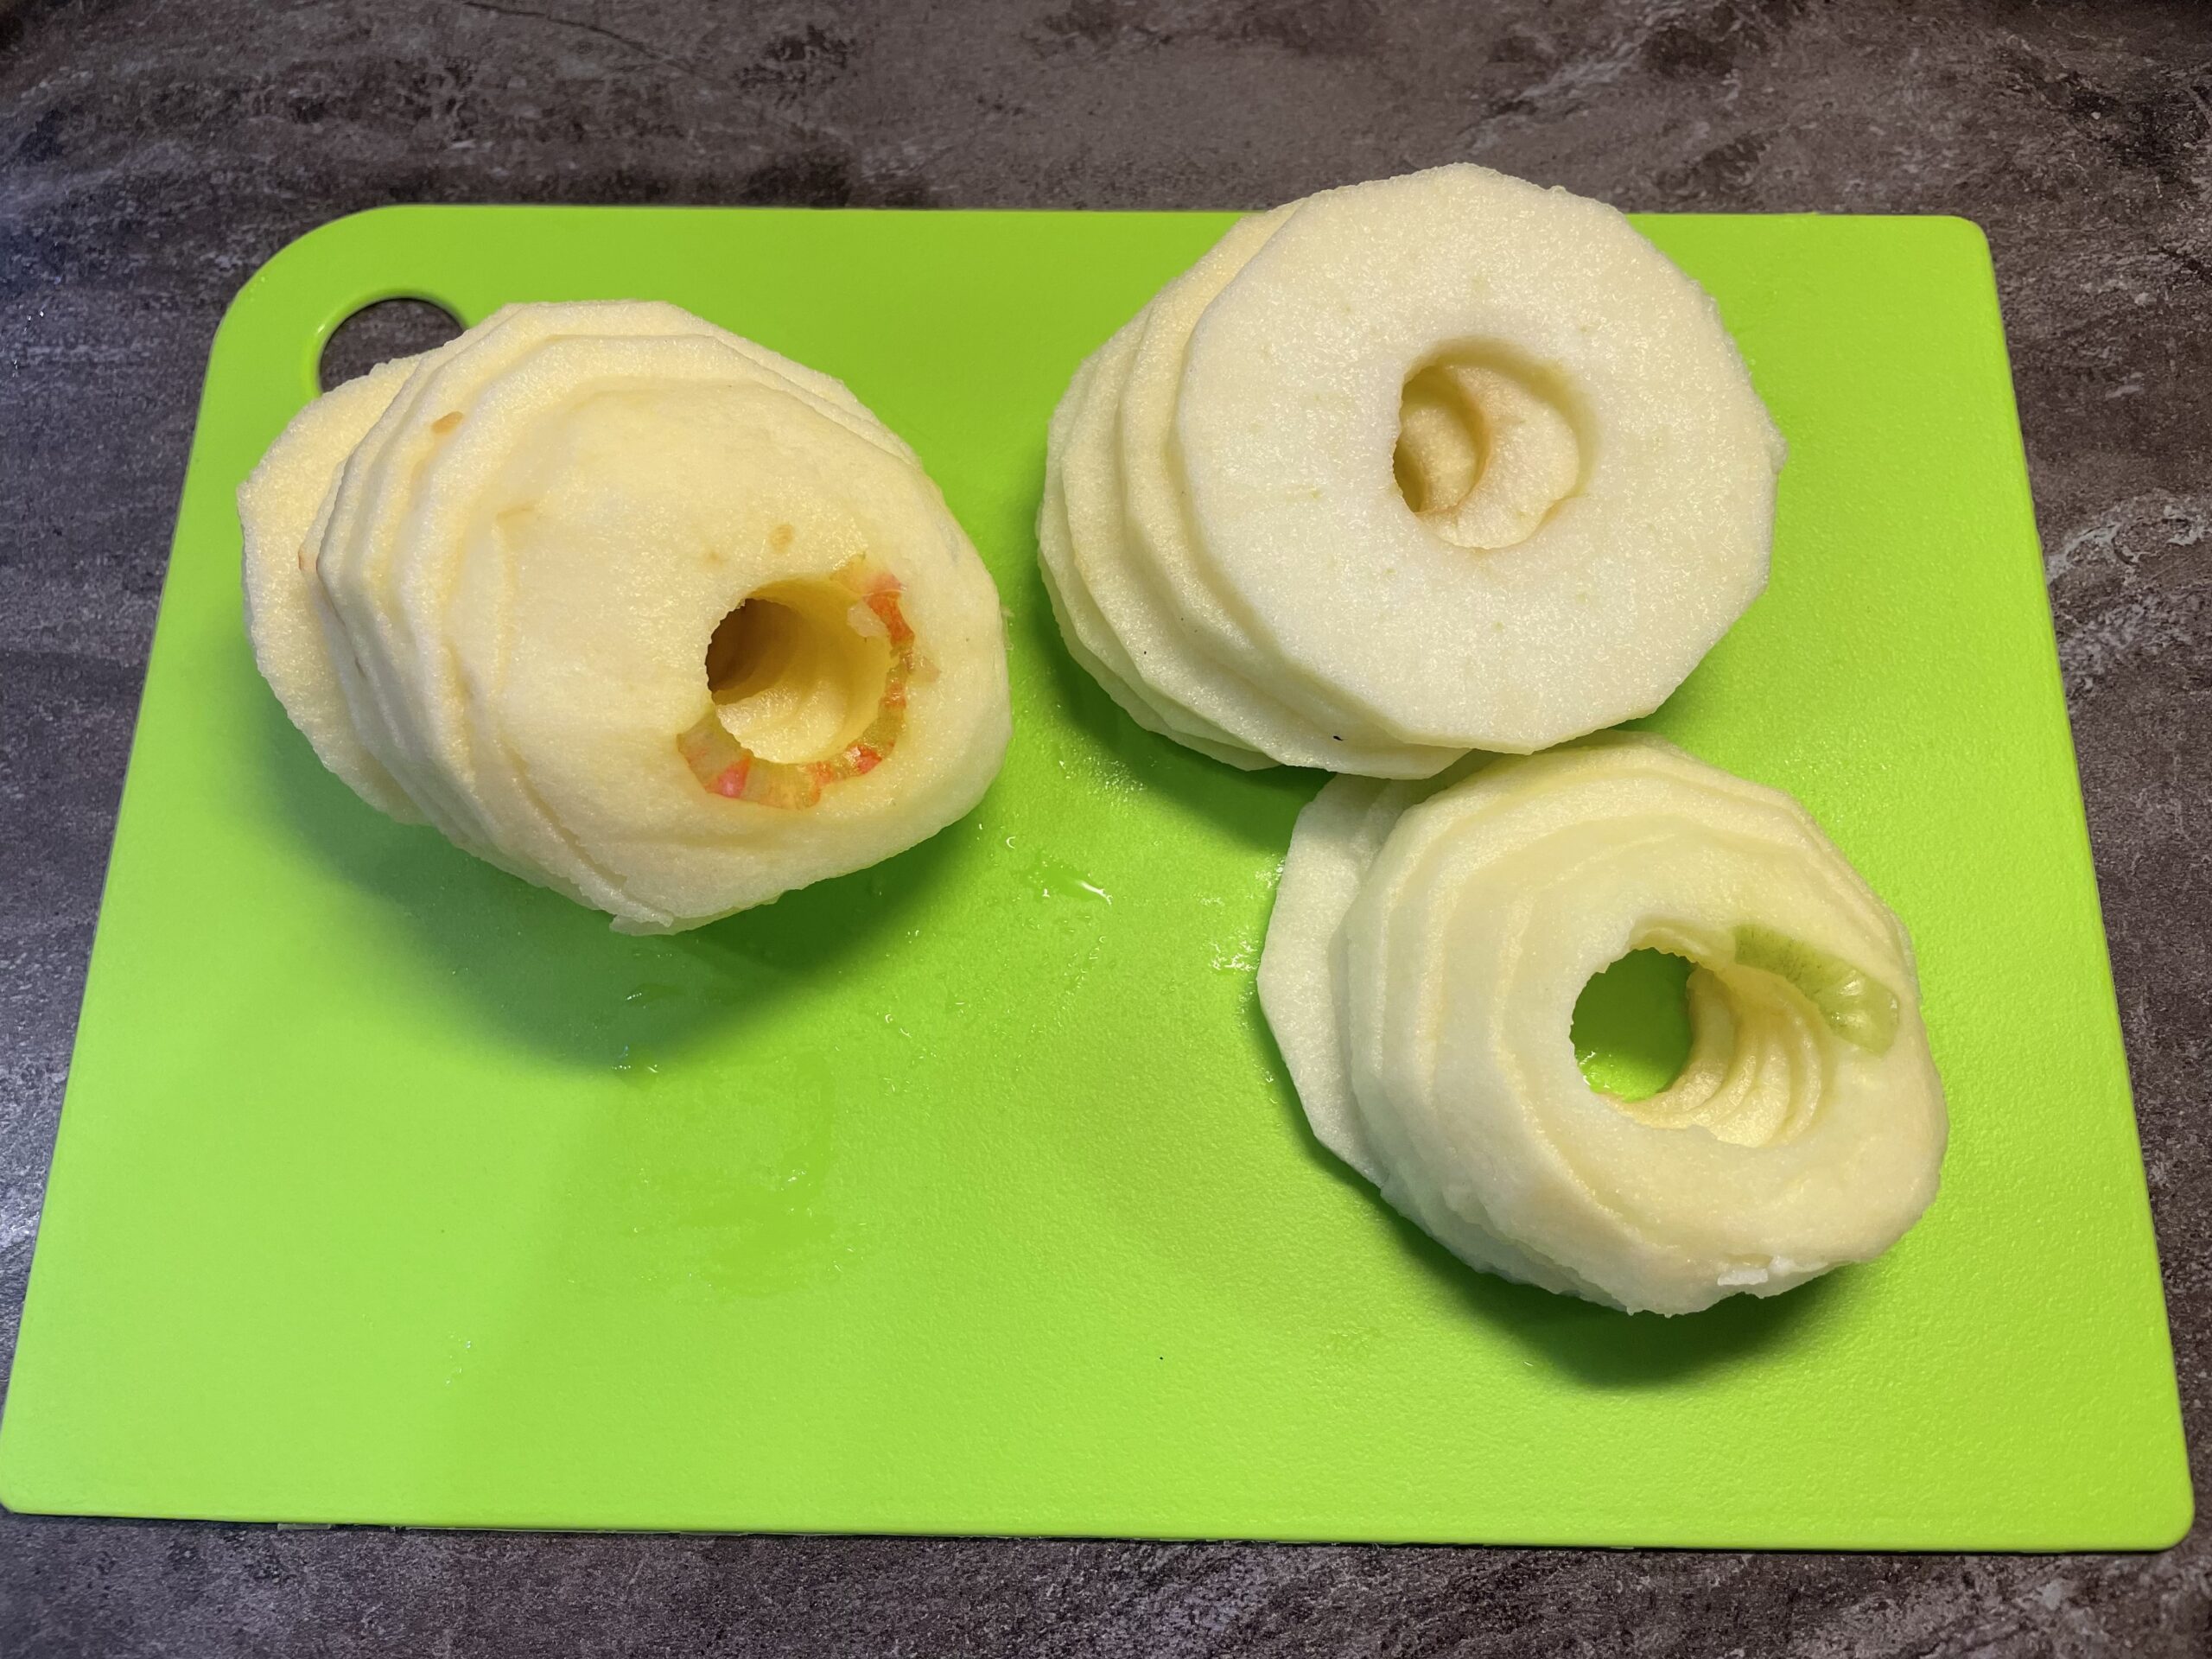 Bild zum Schritt 19 für das Bastel- und DIY-Abenteuer für Kinder: 'Alle Äpfel sind in Scheiben geschnitten.'